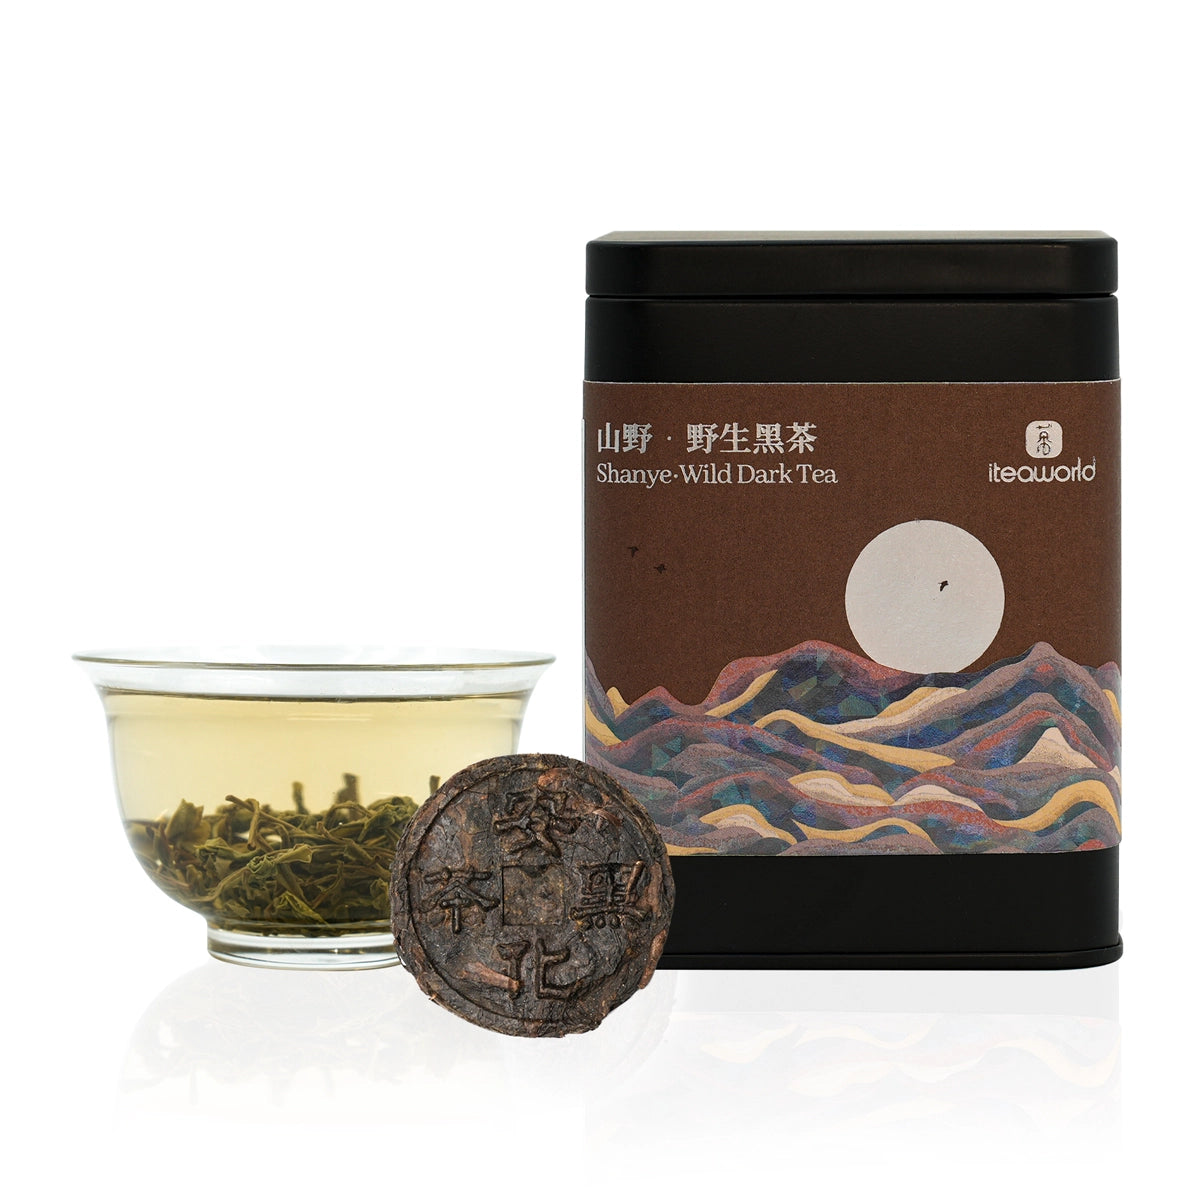 Chinese Wild Dark Tea